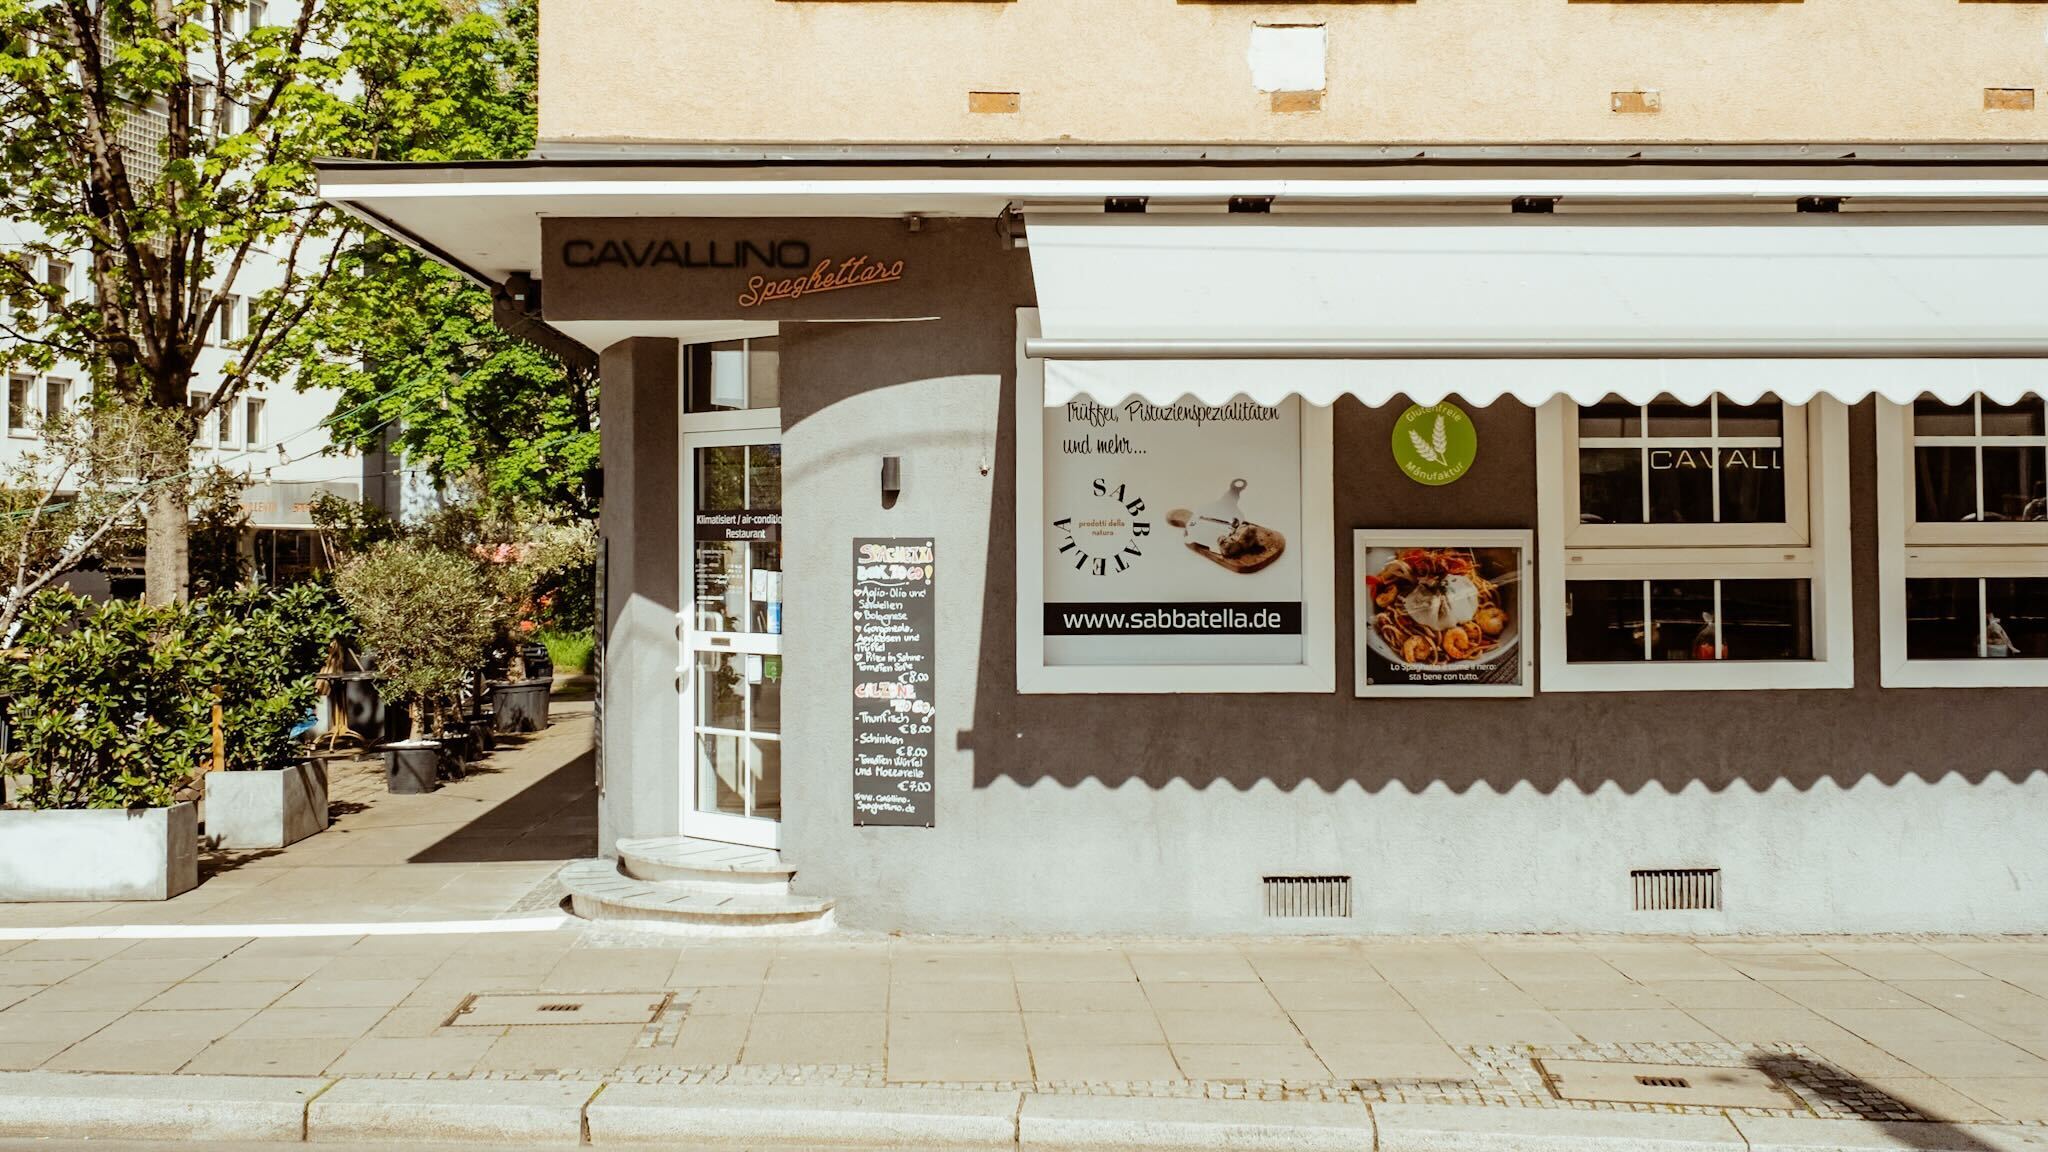 Außenansicht des italienischen Restaurants Cavallino Spaghettaro an der Haltestelle Berliner Platz (Hohe Straße)